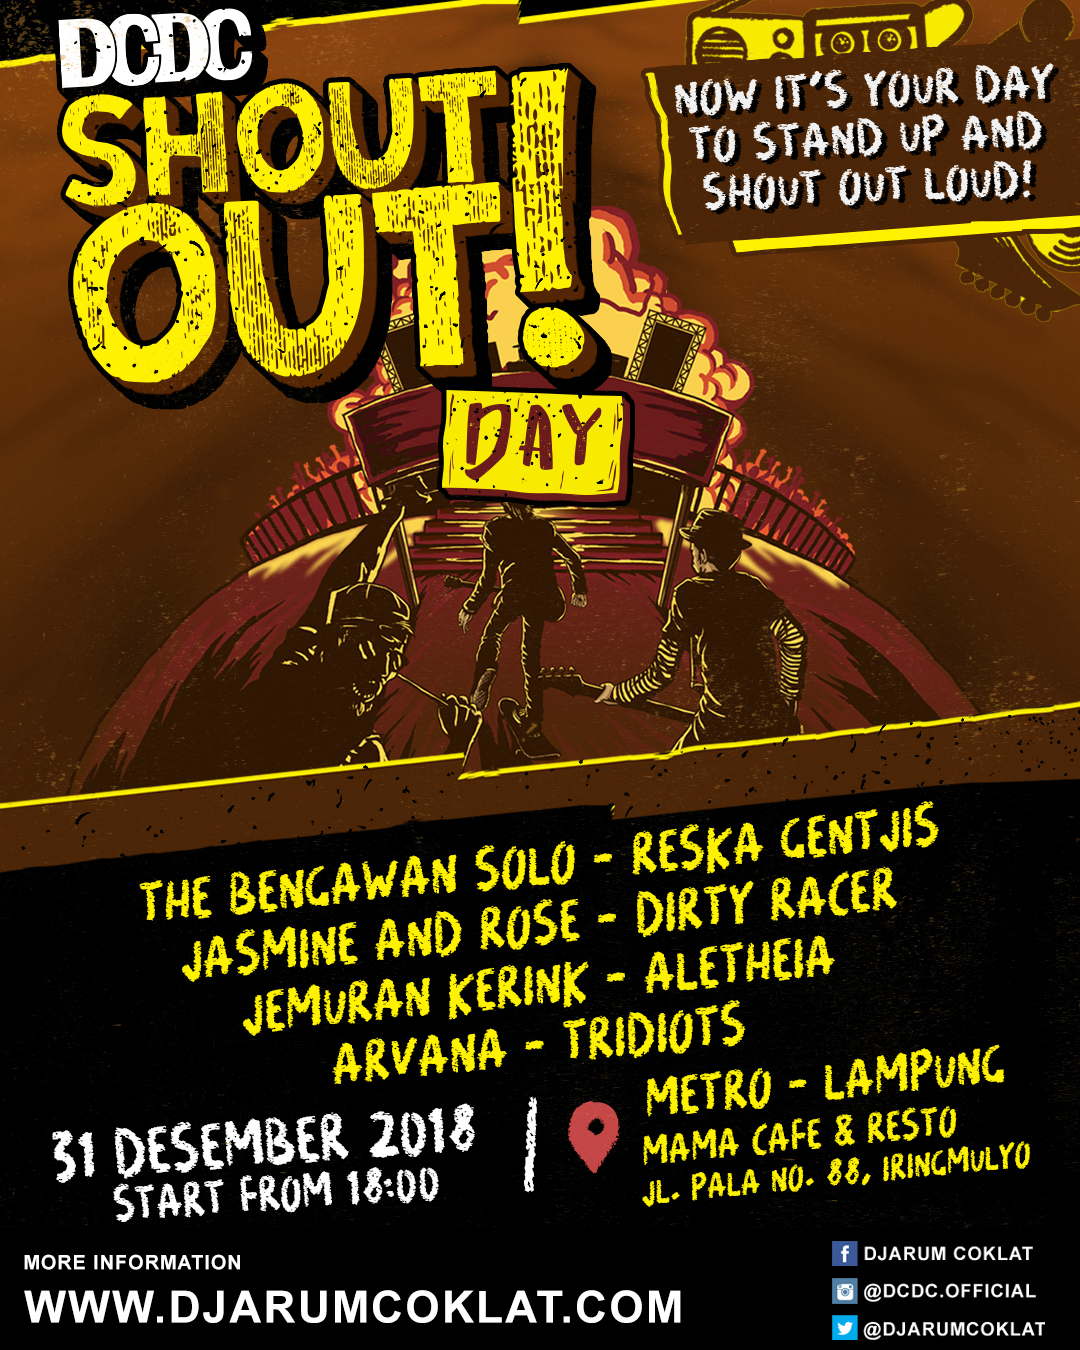 DCDC ShoutOut! Day - Metro, Lampung